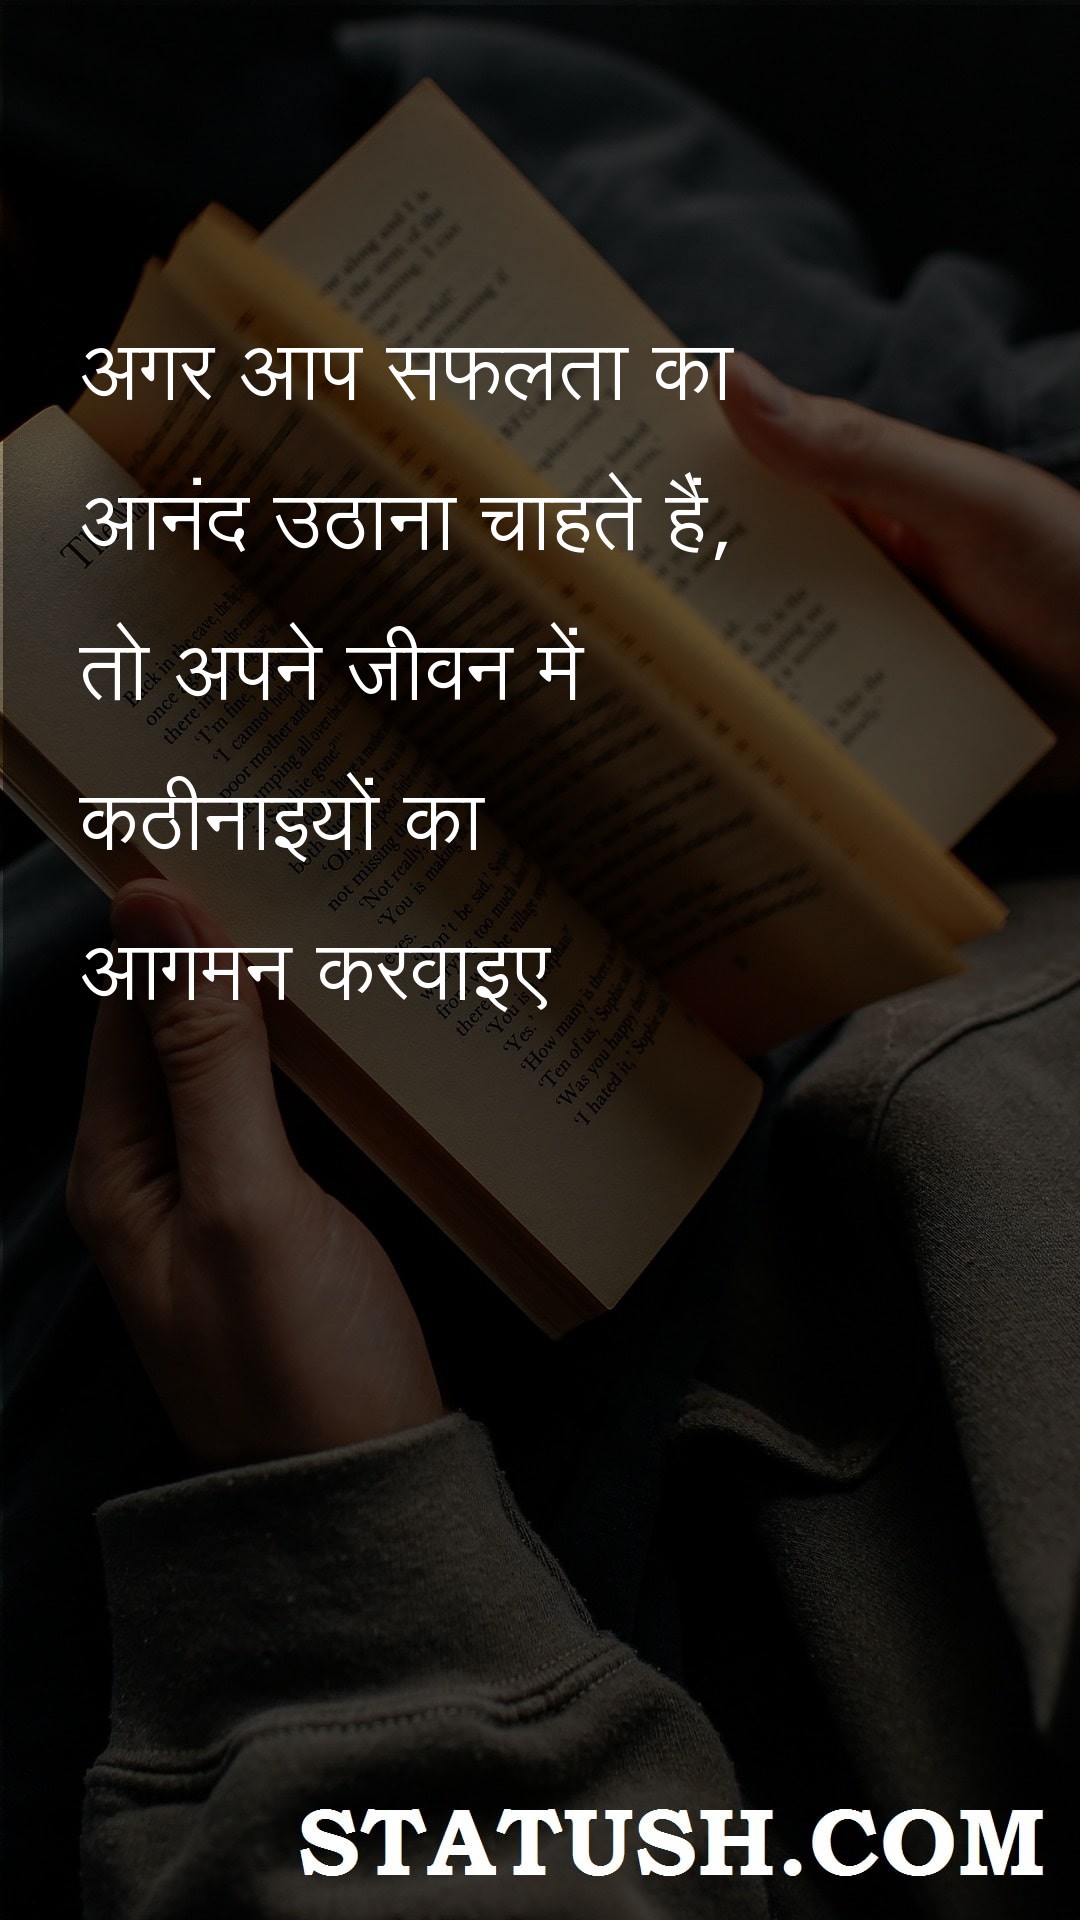 If you want to enjoy success Hindi Quotes at statush.com